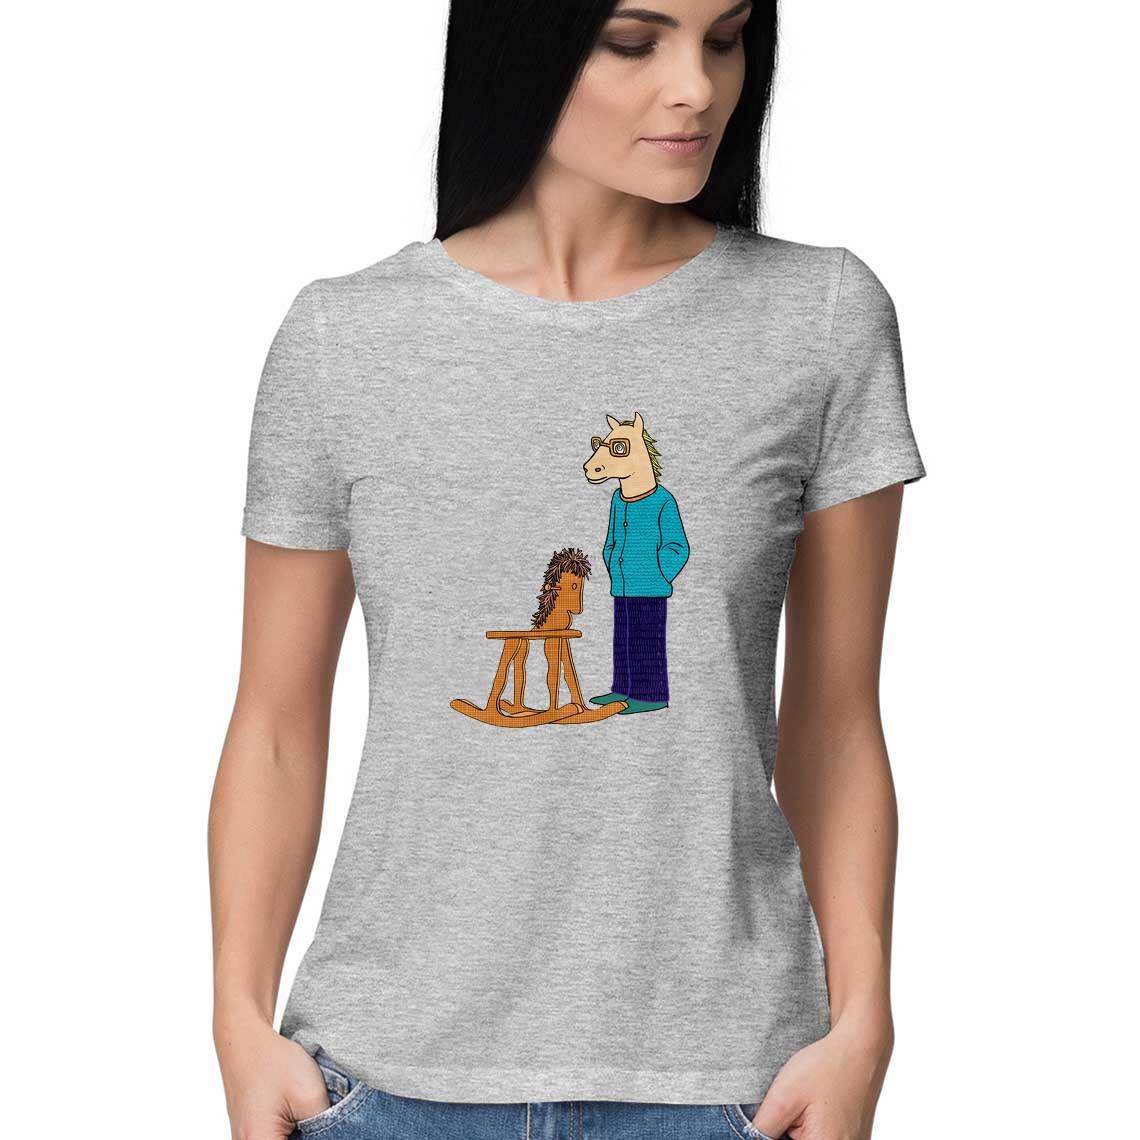 The Flying Horseman Women's Graphic T-Shirt - CBD Store India